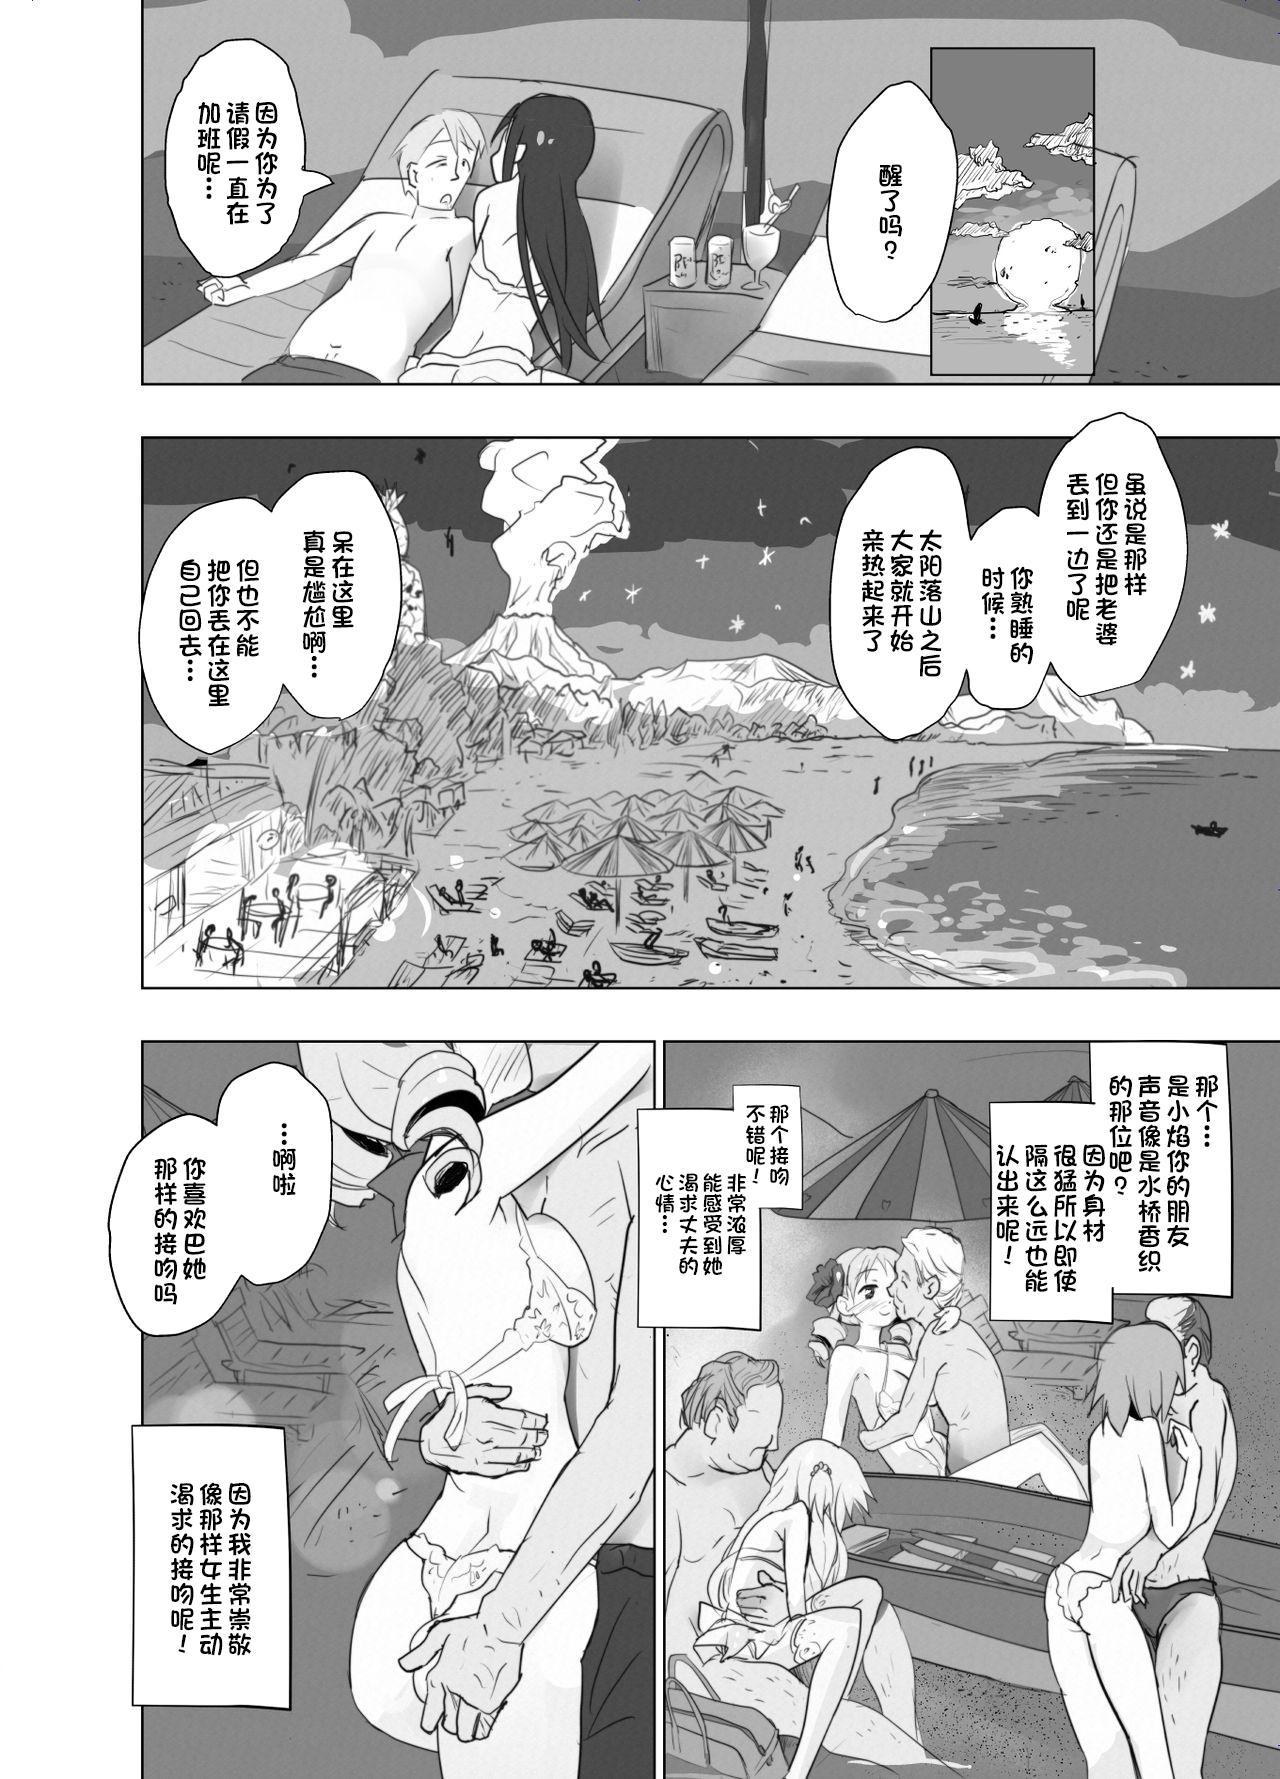 Neighbor Anata no Koto ga Daisuki na Homura-chan to Iku Shuudan Roshutsu Shinkon Ryokou Hawaii!! - Puella magi madoka magica Aunty - Page 12